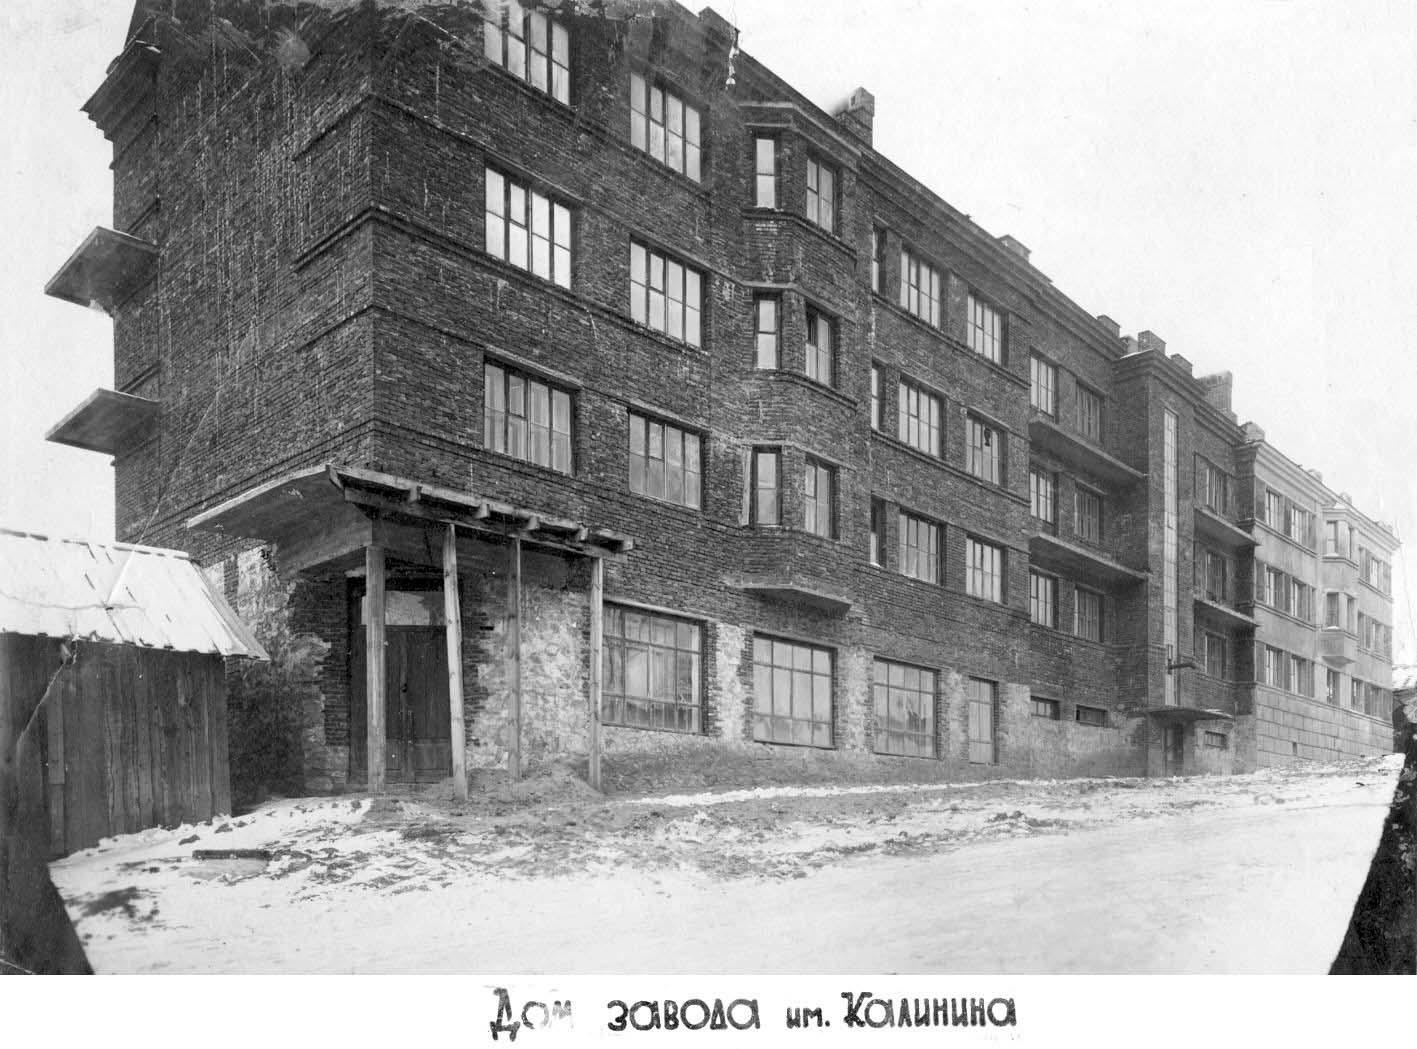 Смоленск в 30-е годы XX века. Часть 2 из 3